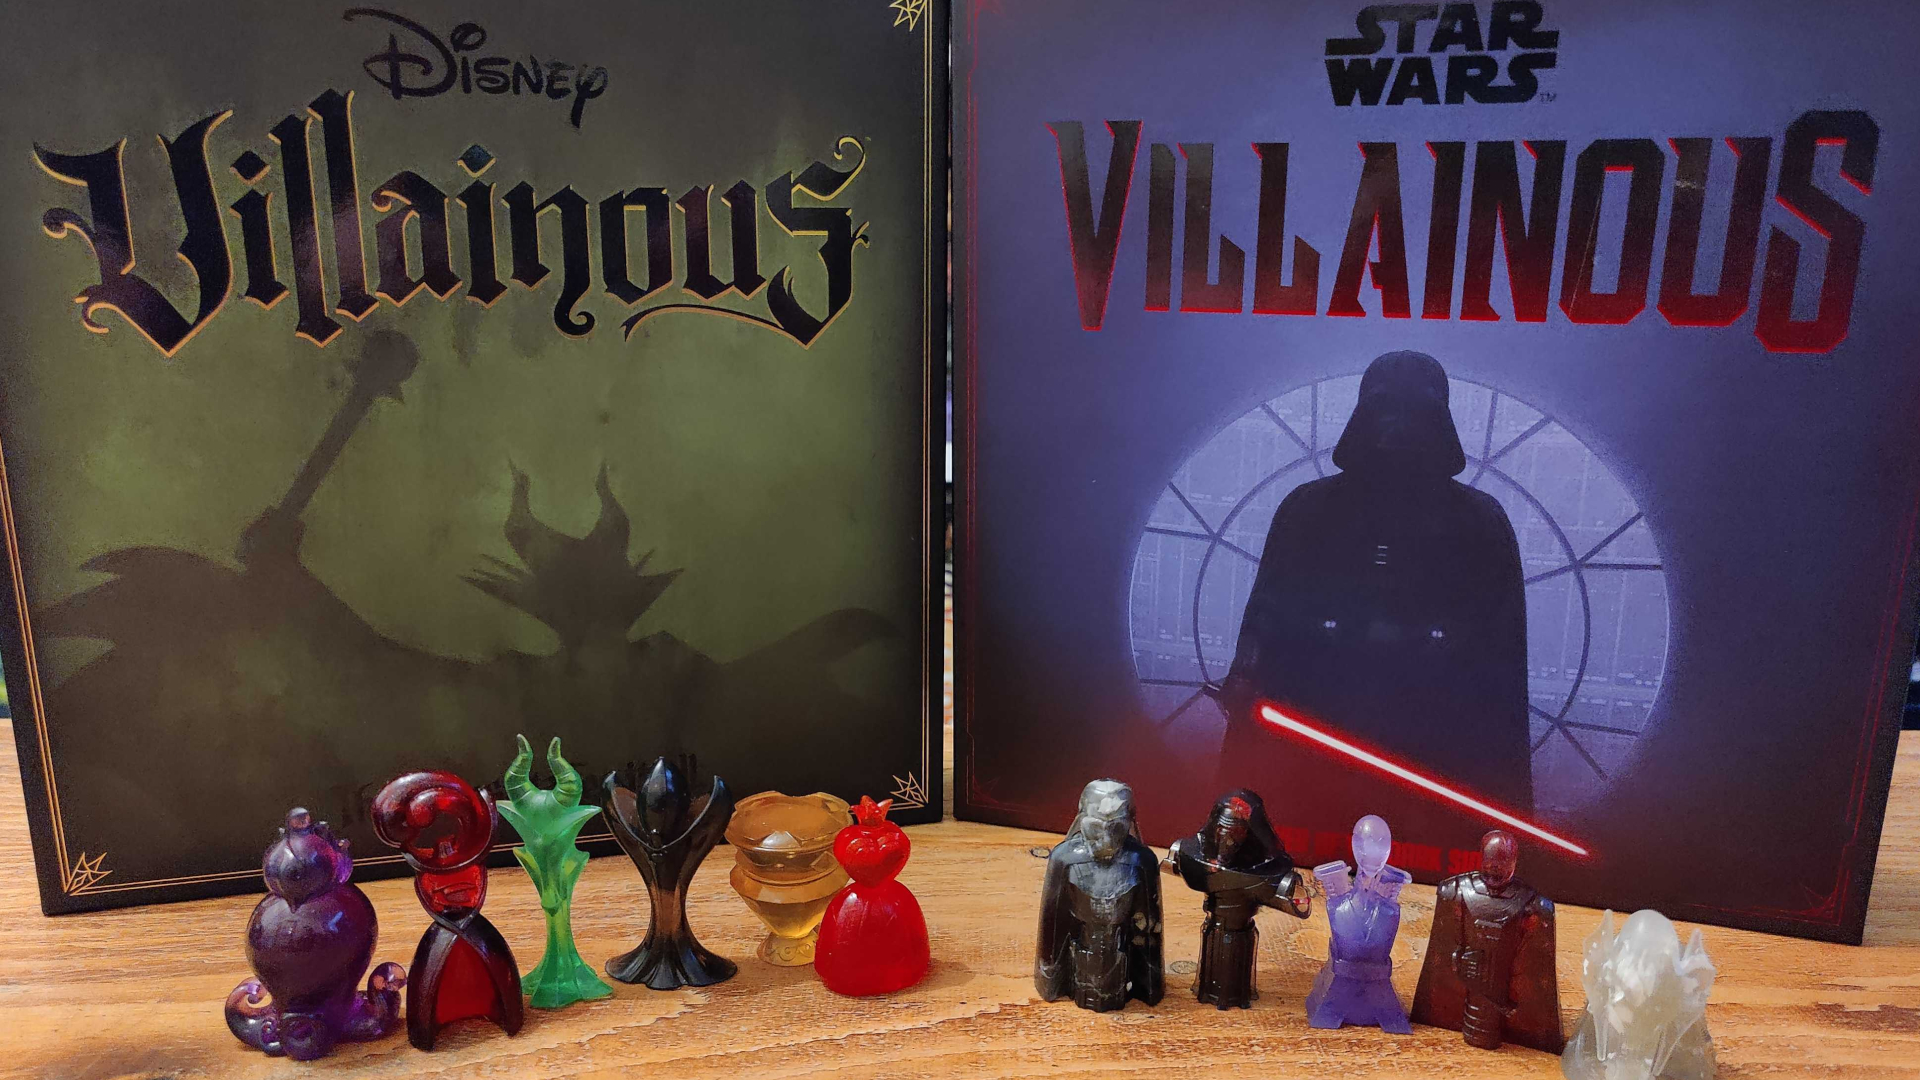 Disney Villainous and Star Wars Villainous 2024 expansions